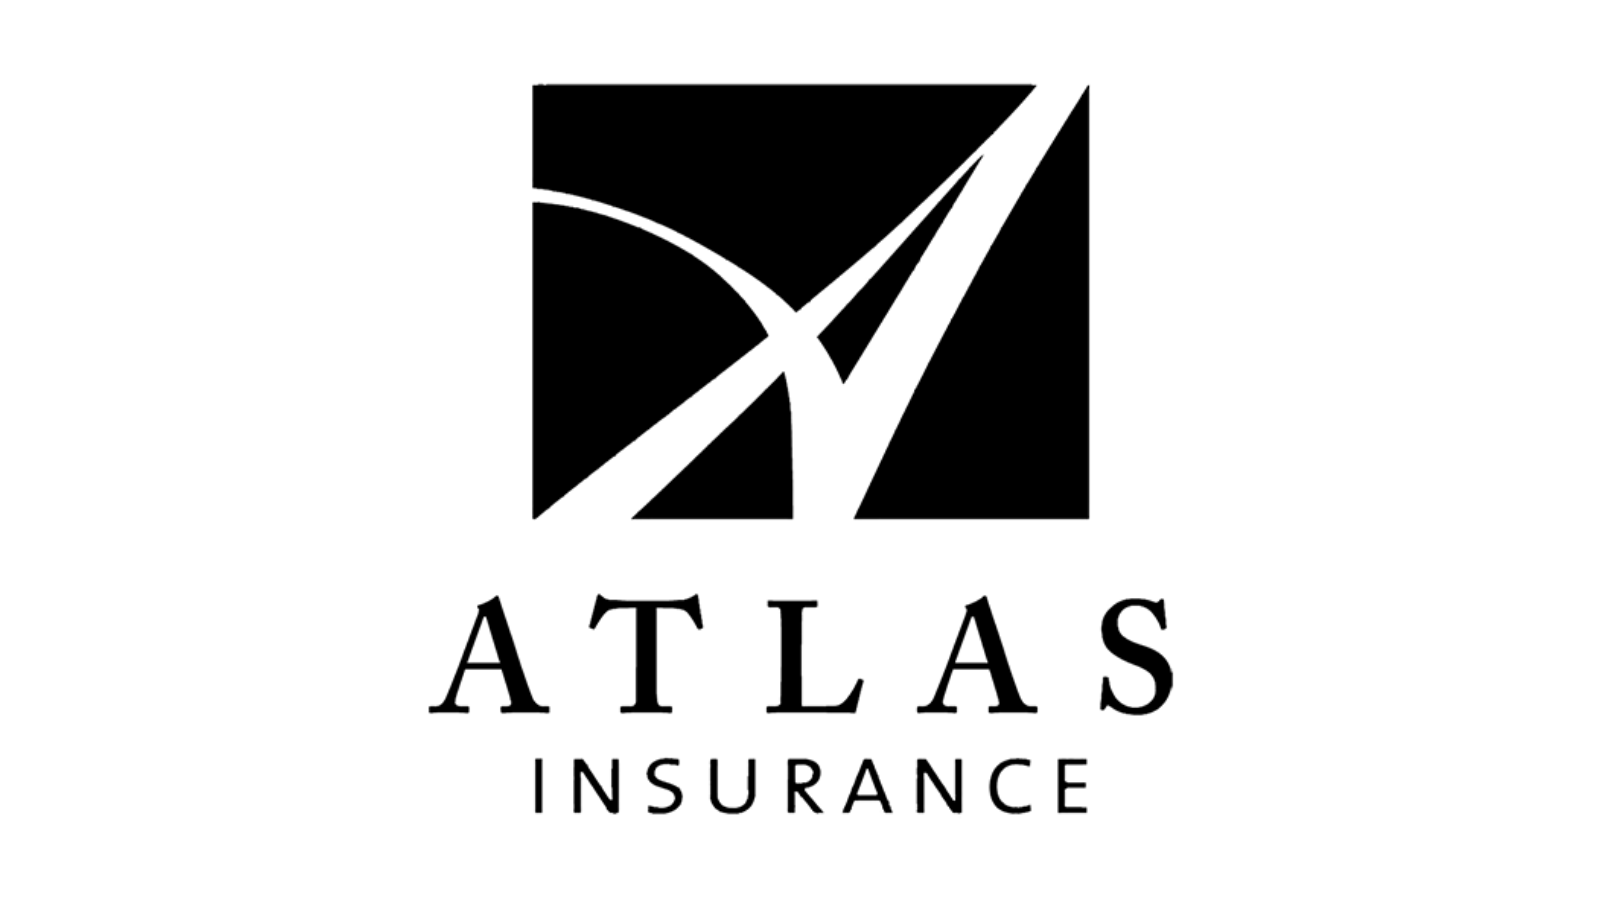 Atlas Insurance Company